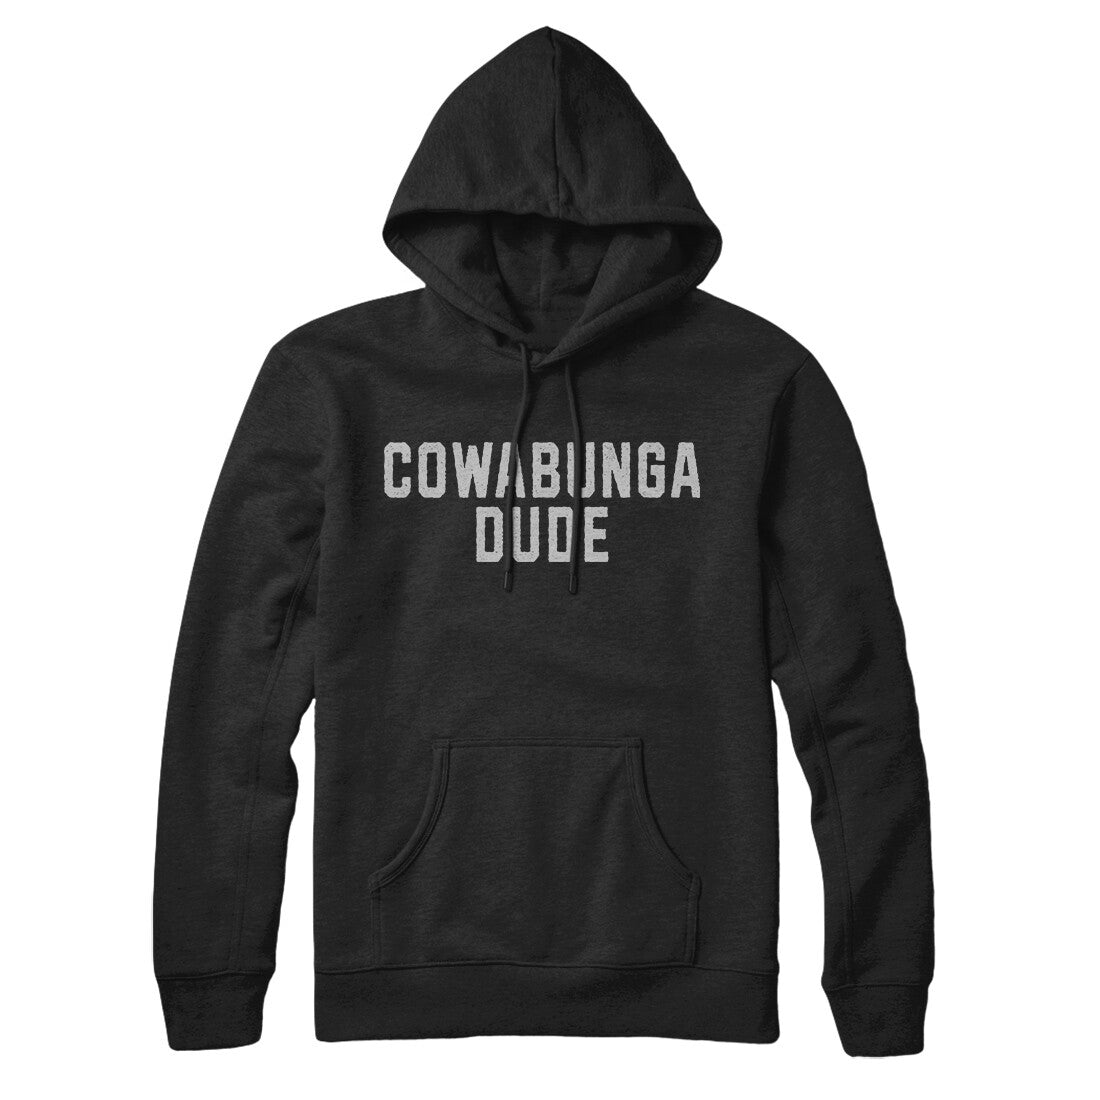 Cowabunga Dude in Black Color